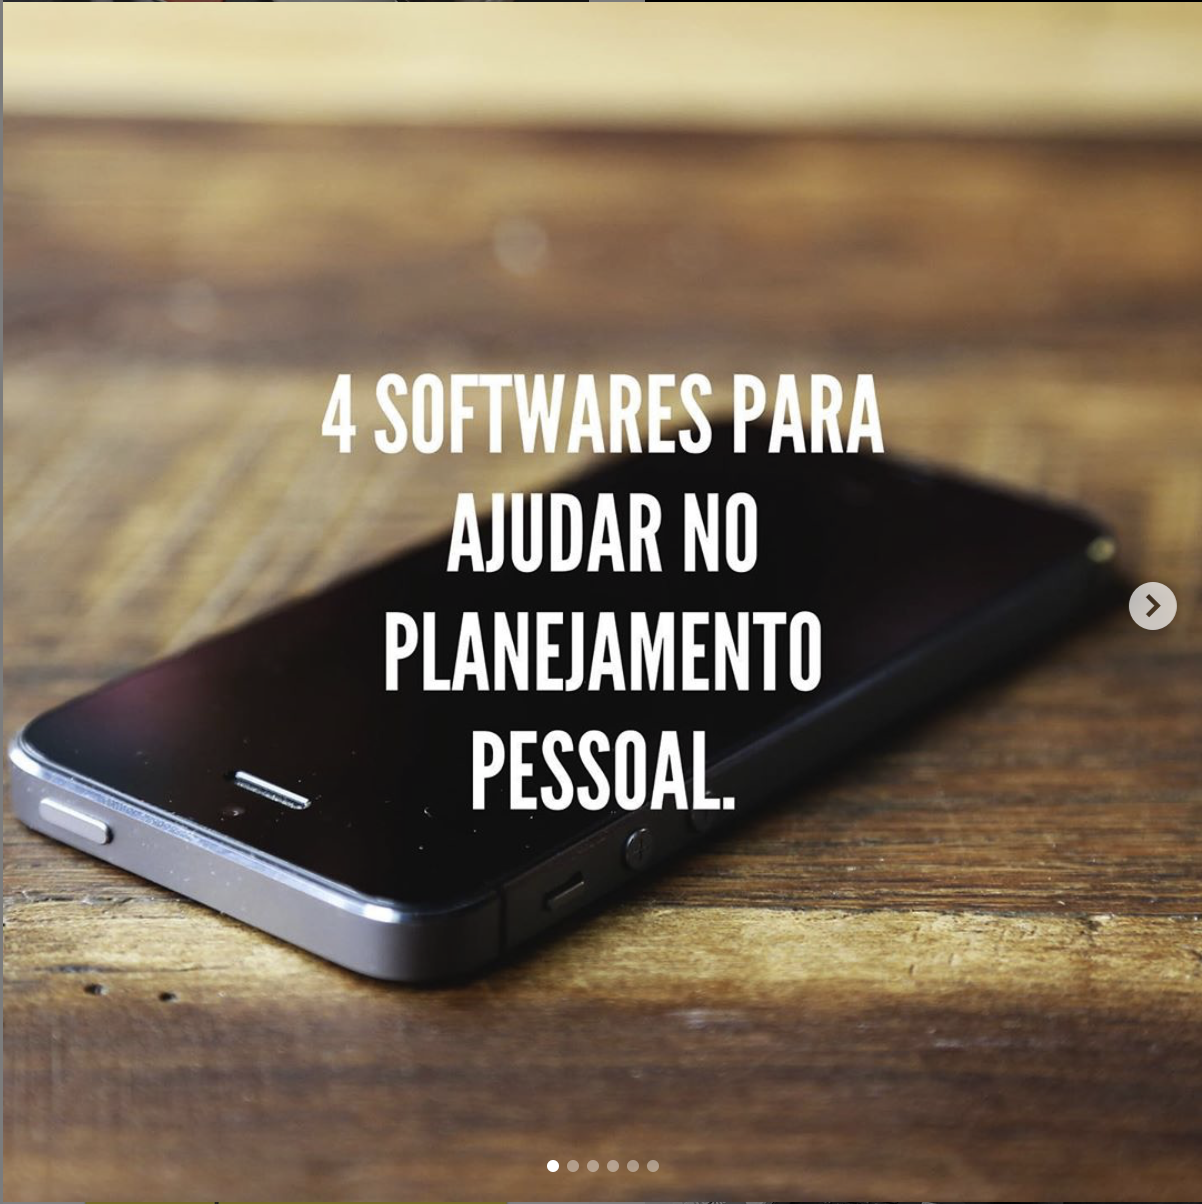 4 Softwares para ajudar no planejamento pessoal.